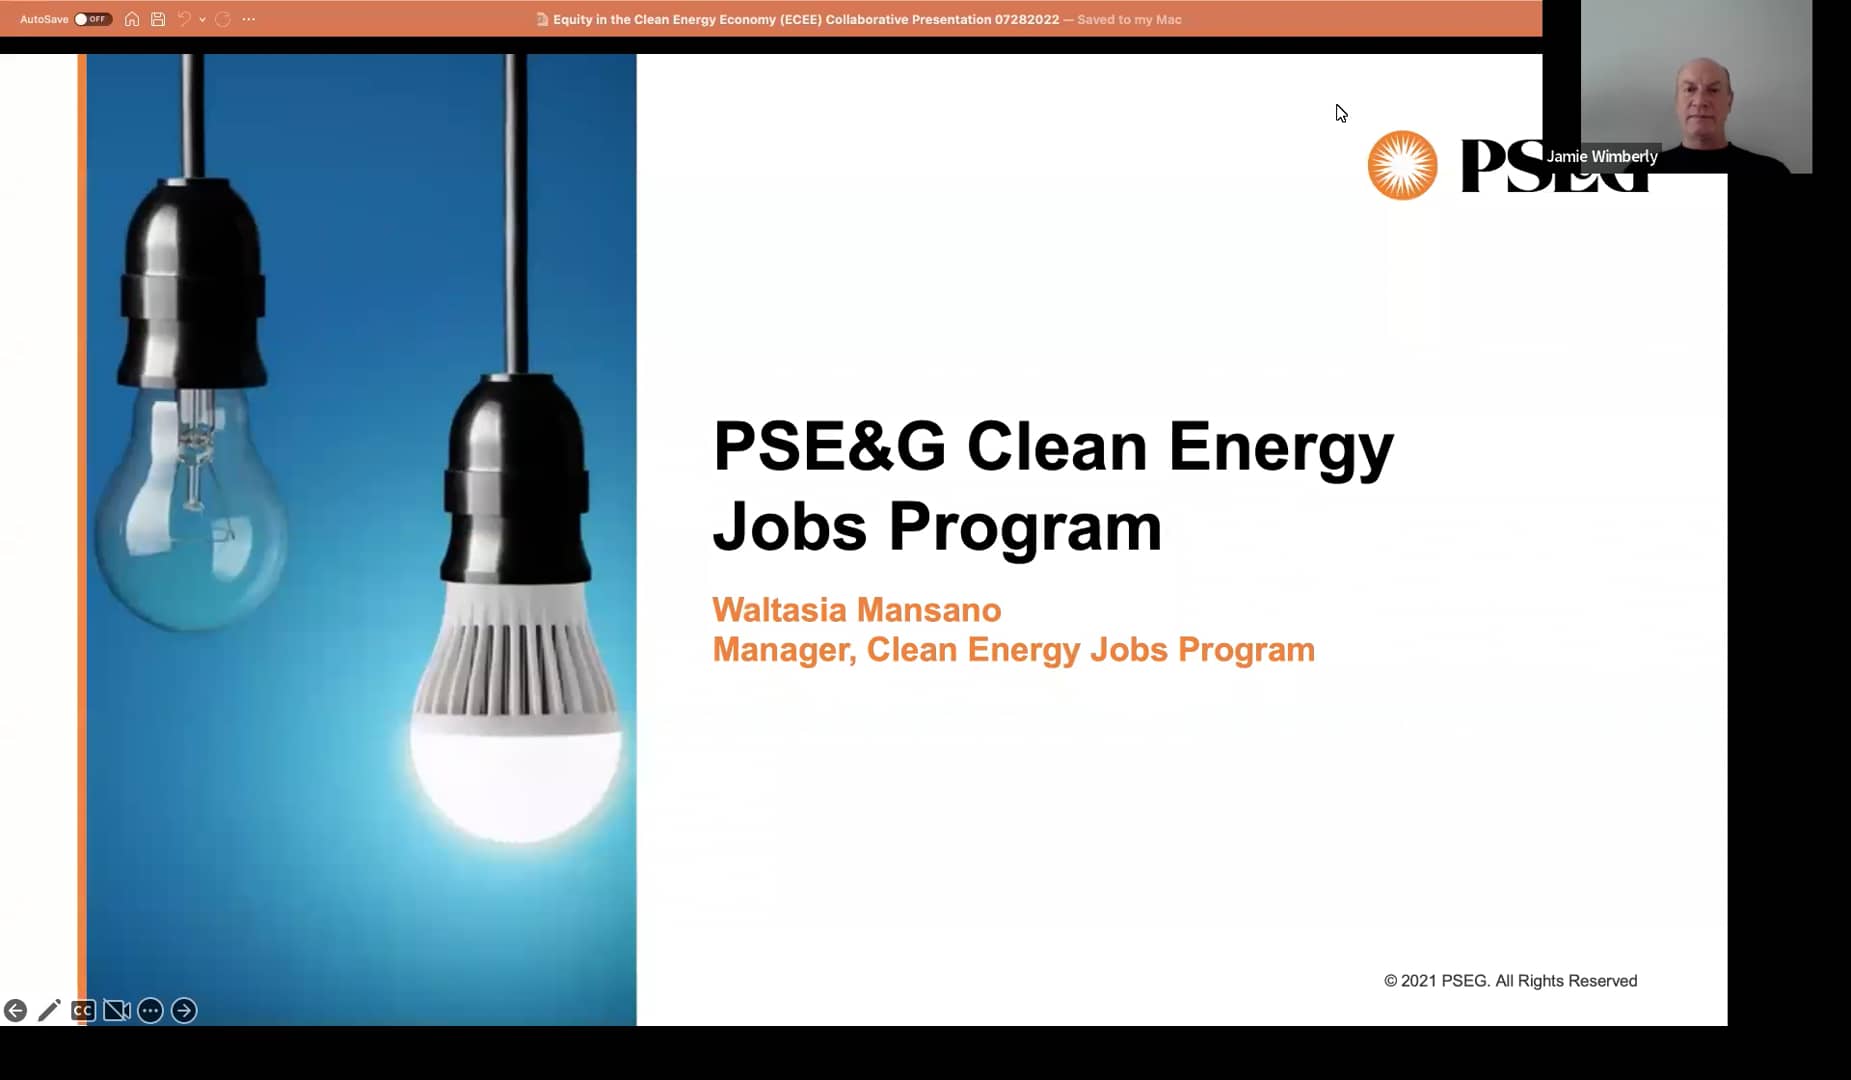 defg-22-08-03-pseg-s-clean-energy-jobs-program-presenter-waltasia